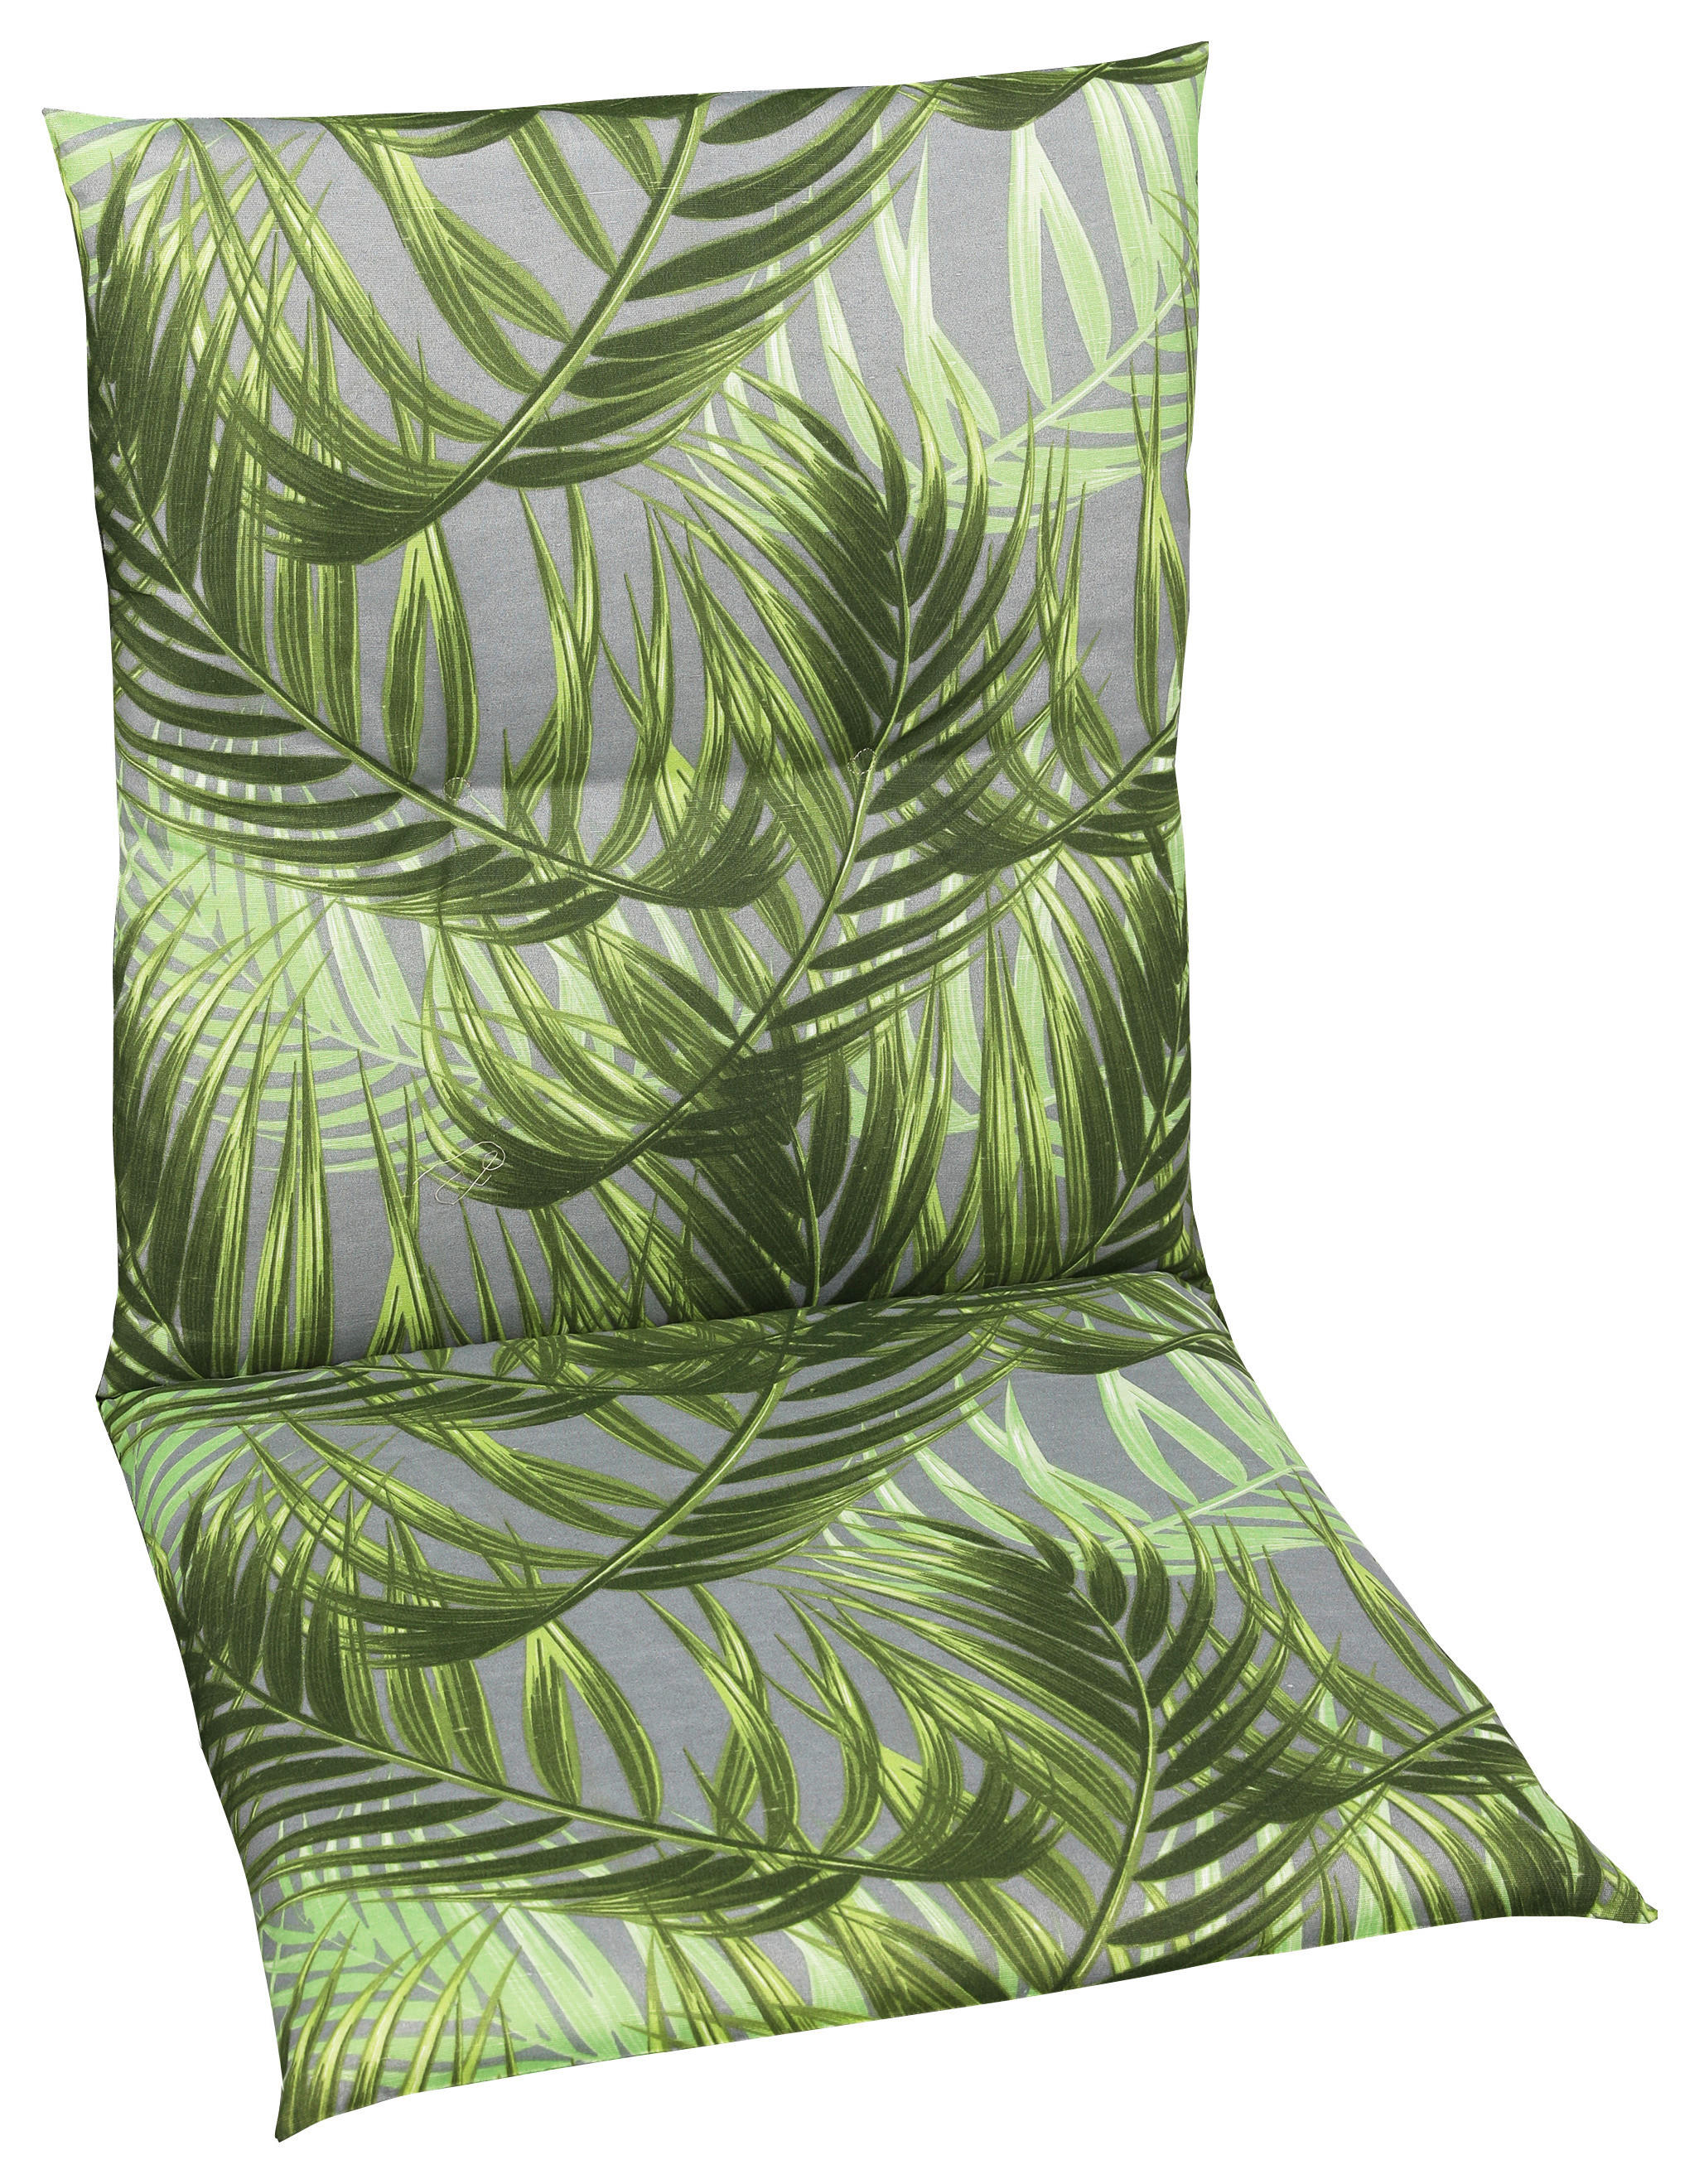 SZÉKPÁRNA szürke, zöld levelek  - szürke/zöld, Design, textil (48/5/98cm)